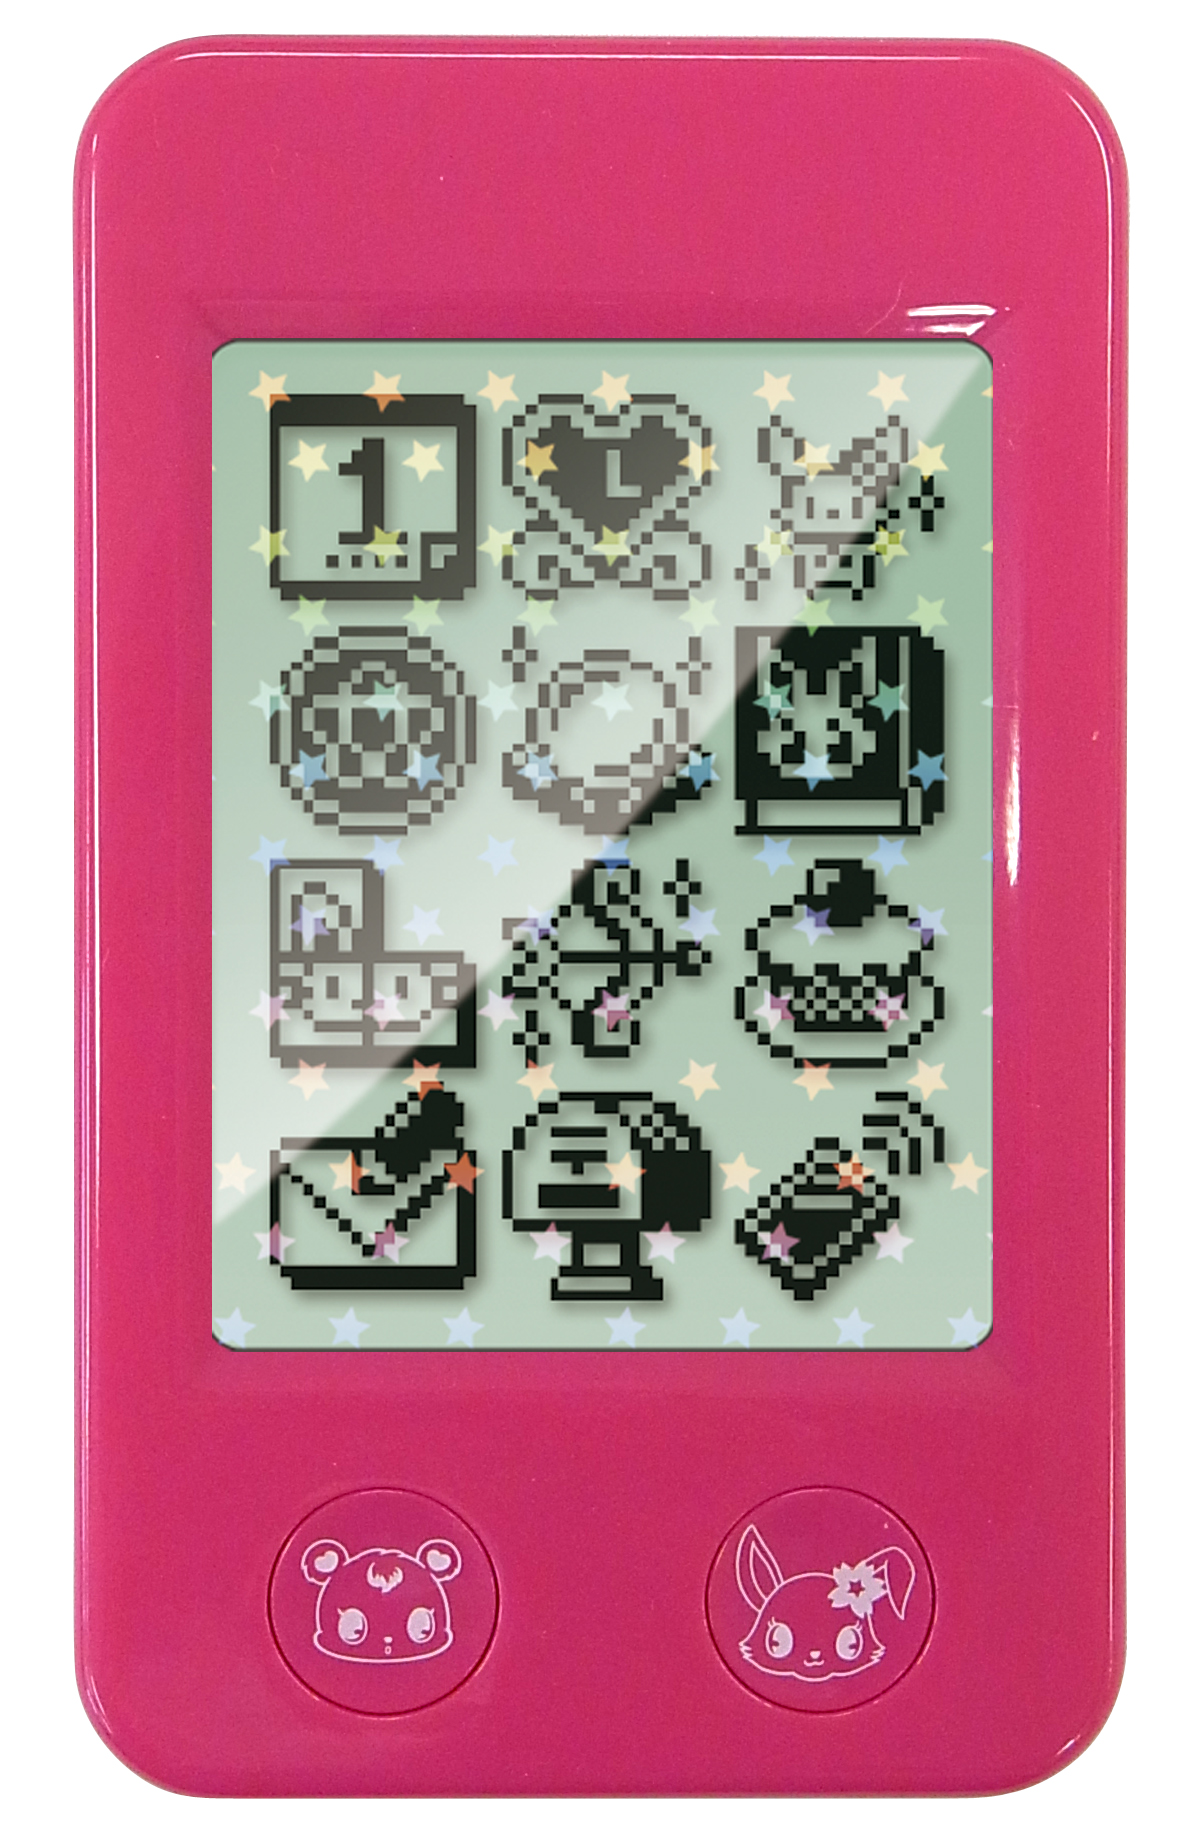 おもちゃ業界にもスマホの波 タッチパネル搭載のスマートフォン型玩具がバージョンアップ ジュエルポッド クリスタル 11年8月3日 水 新発売 セガトイズのプレスリリース